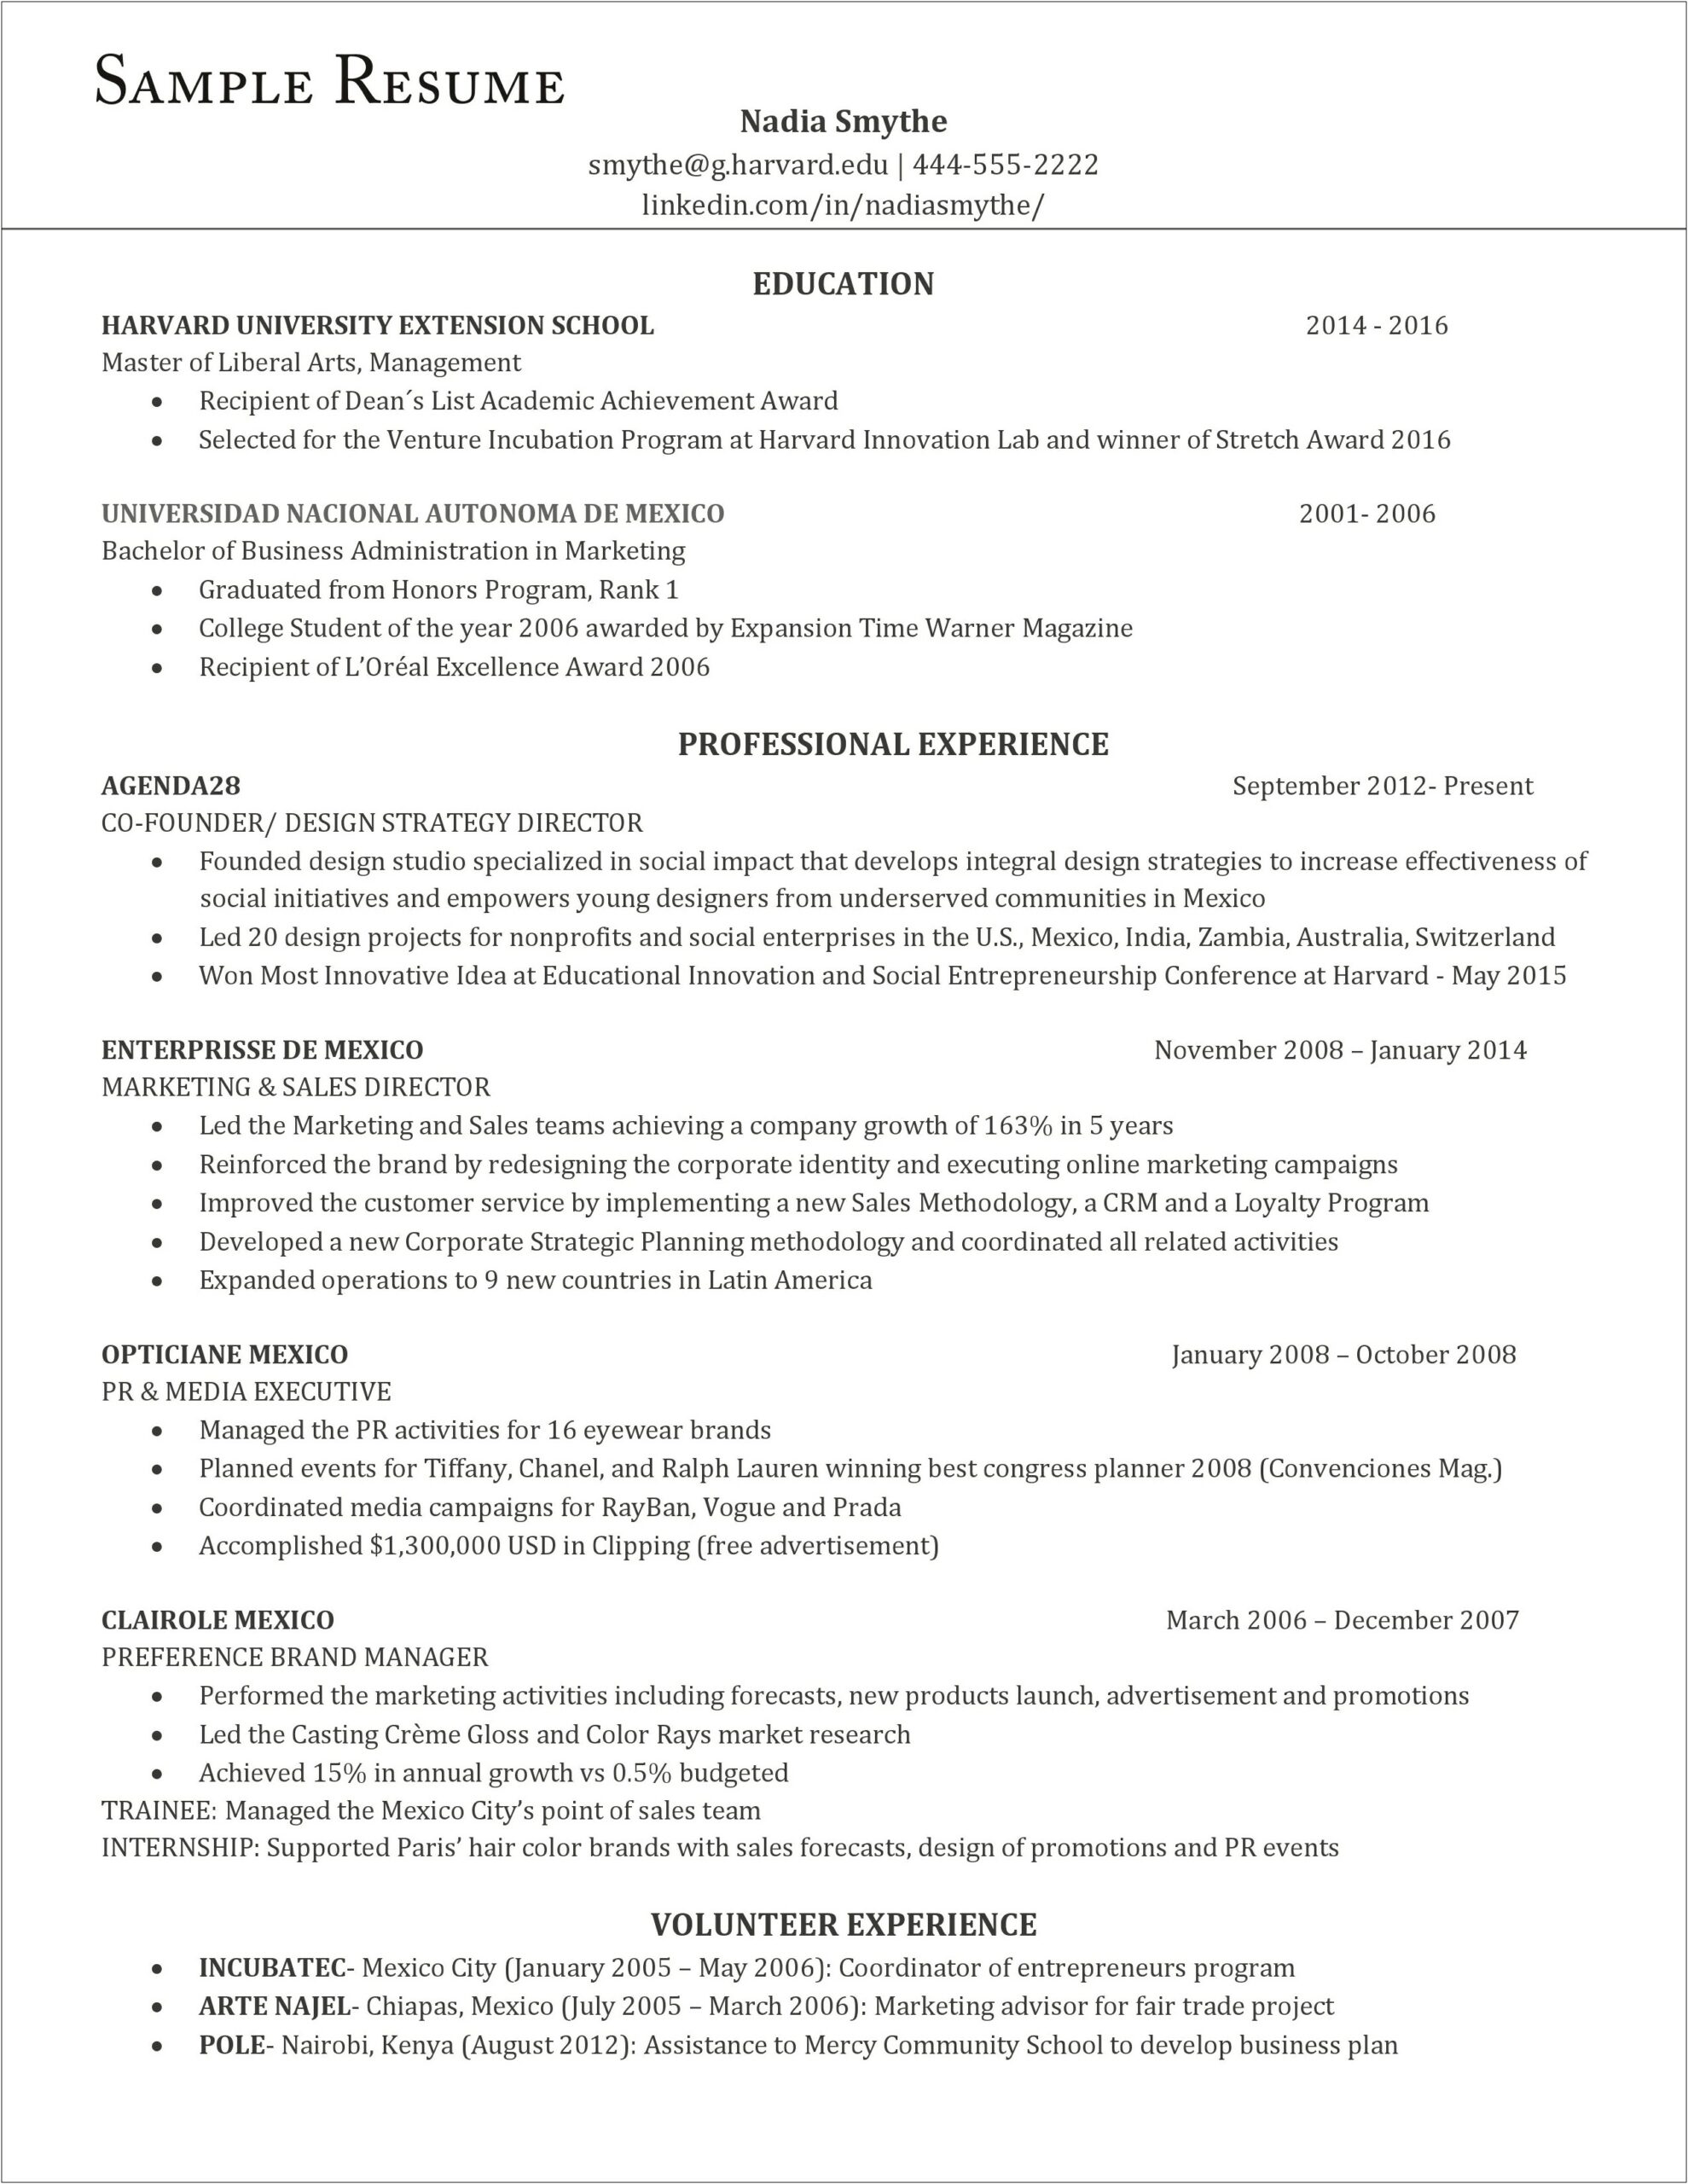 Sample Resume For Career Fair